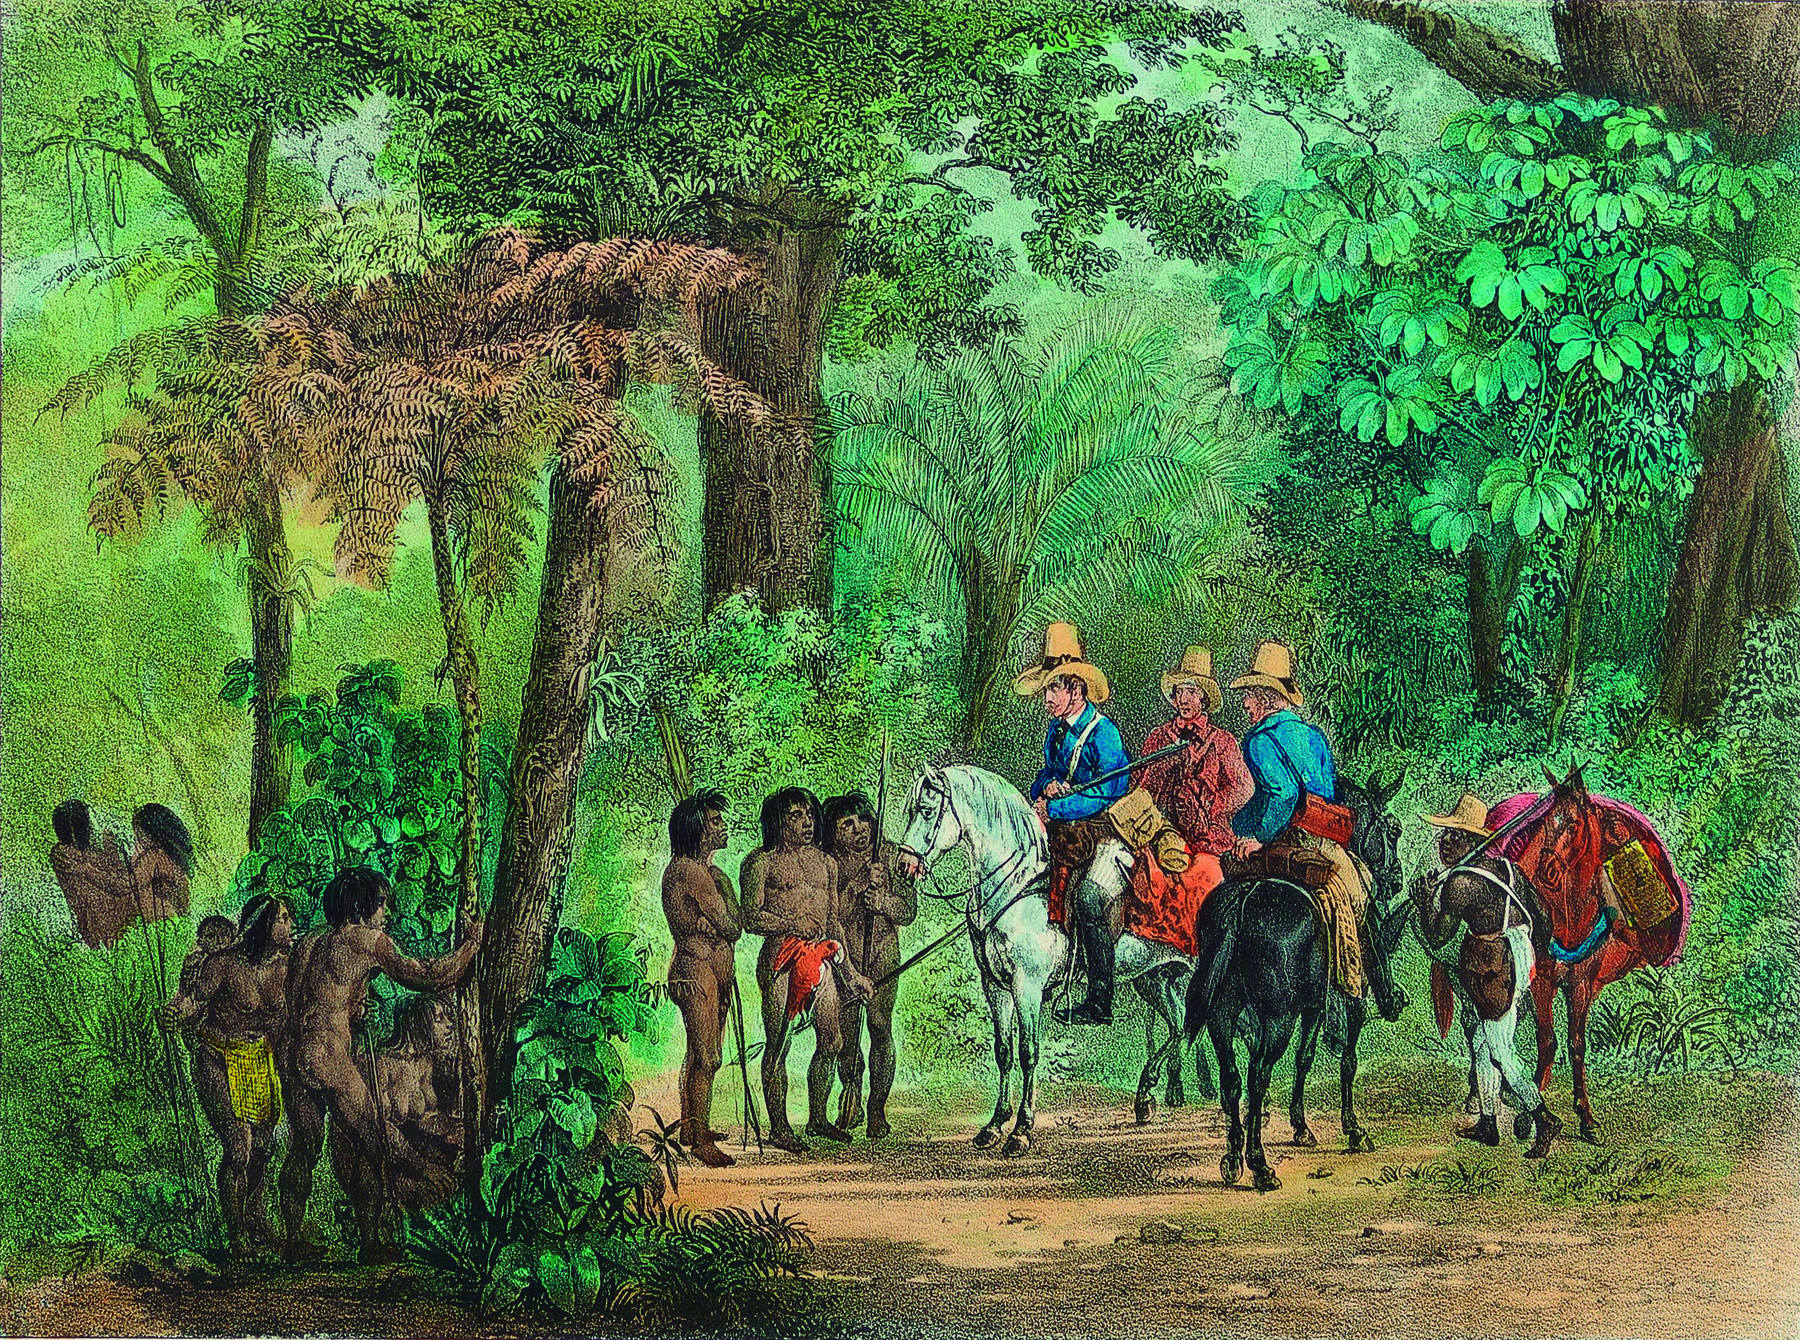 Litografia. Homens brancos a cavalo dentro de uma floresta densa. Eles usam chapéu, casaco, calças e botas até a altura dos joelhos, e carregam armas de fogo. Próximos a eles, um grupo de 3 homens indígenas portando lanças. Atrás das árvores, outros indígenas observam.